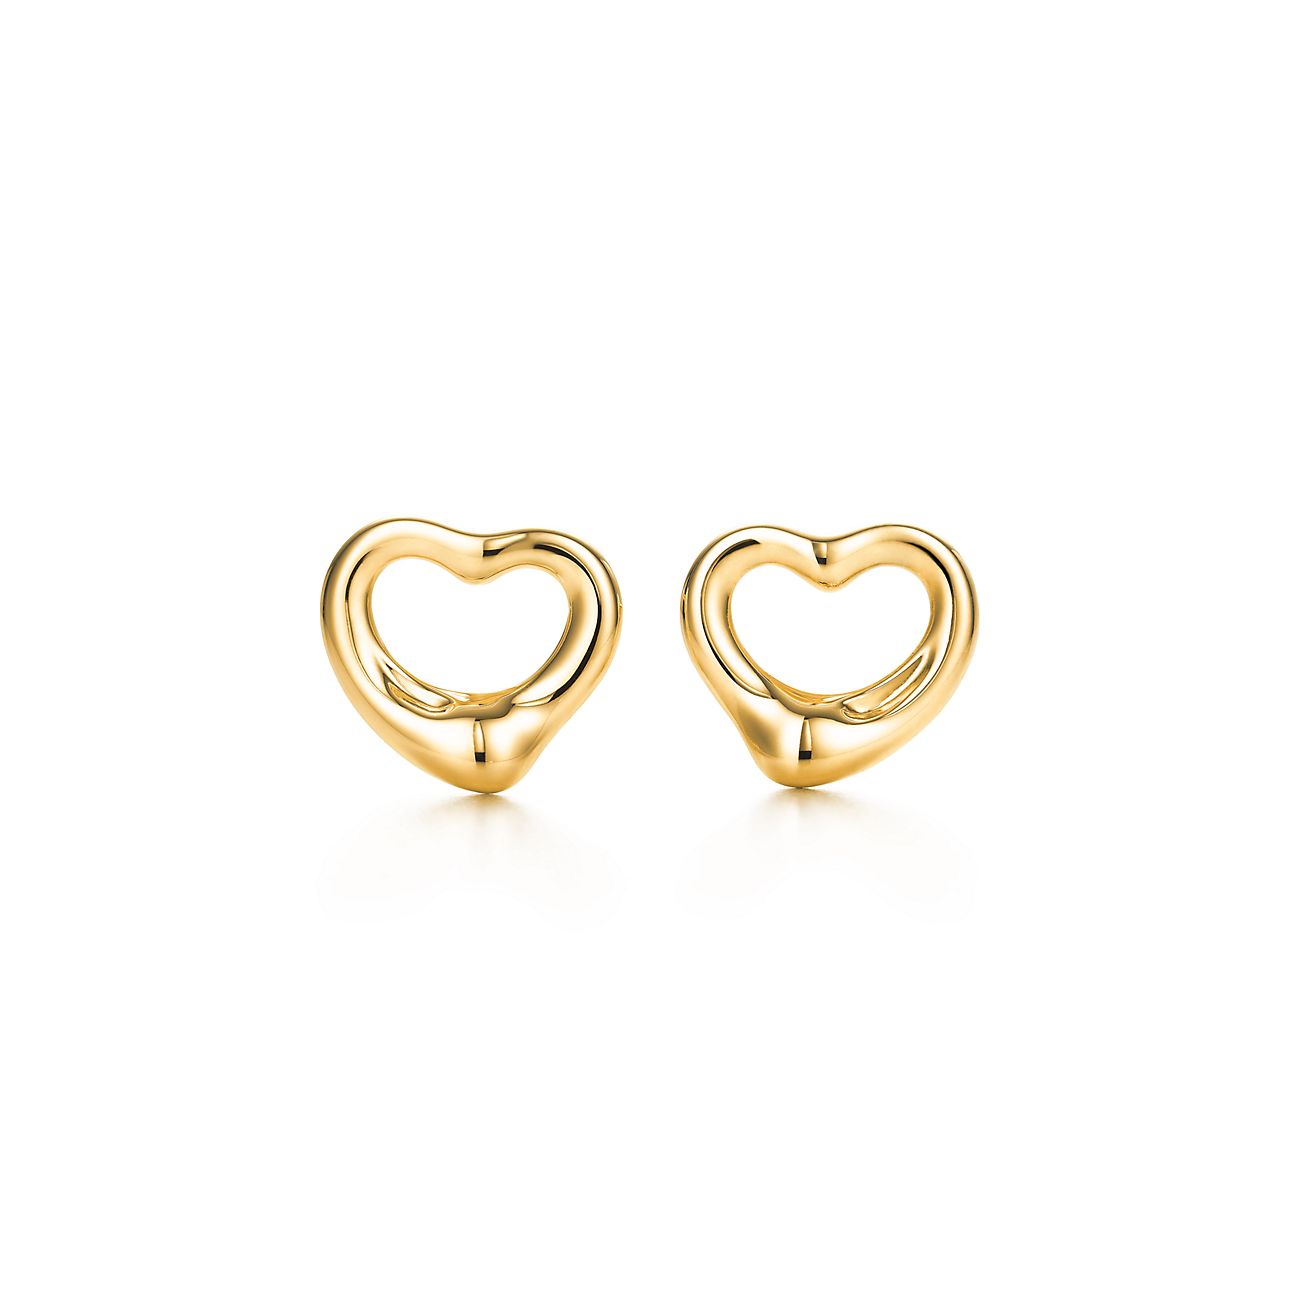 Elsa Peretti® Open Heart Stud Earrings in Yellow Gold, 11 mm